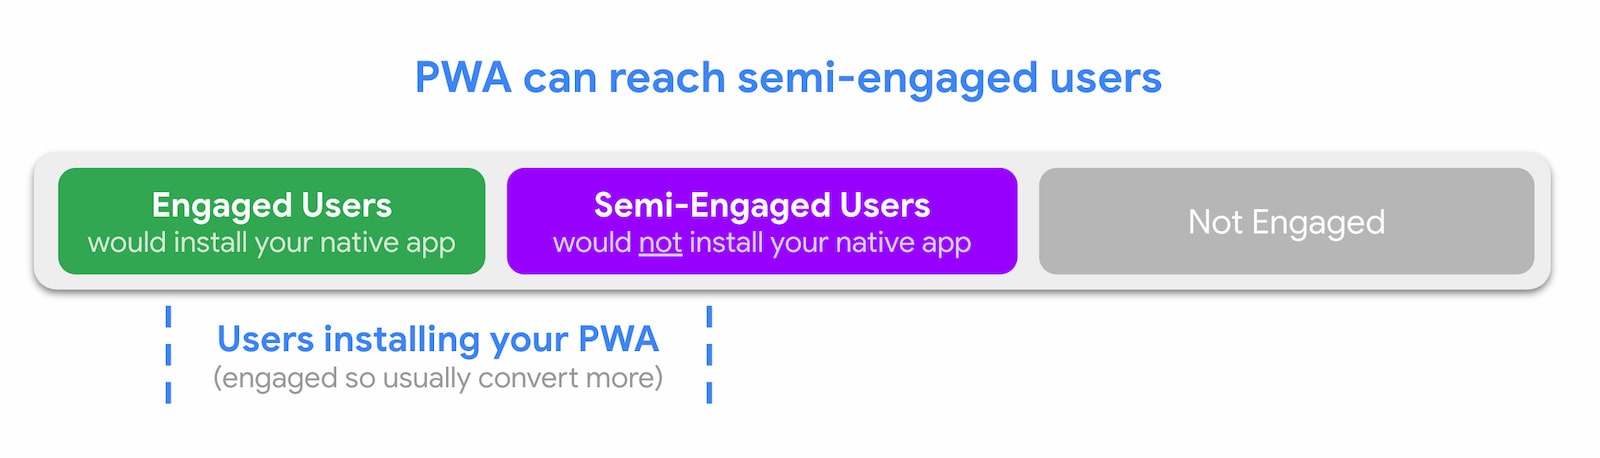 Les PWA peuvent toucher des utilisateurs semi-engagés.